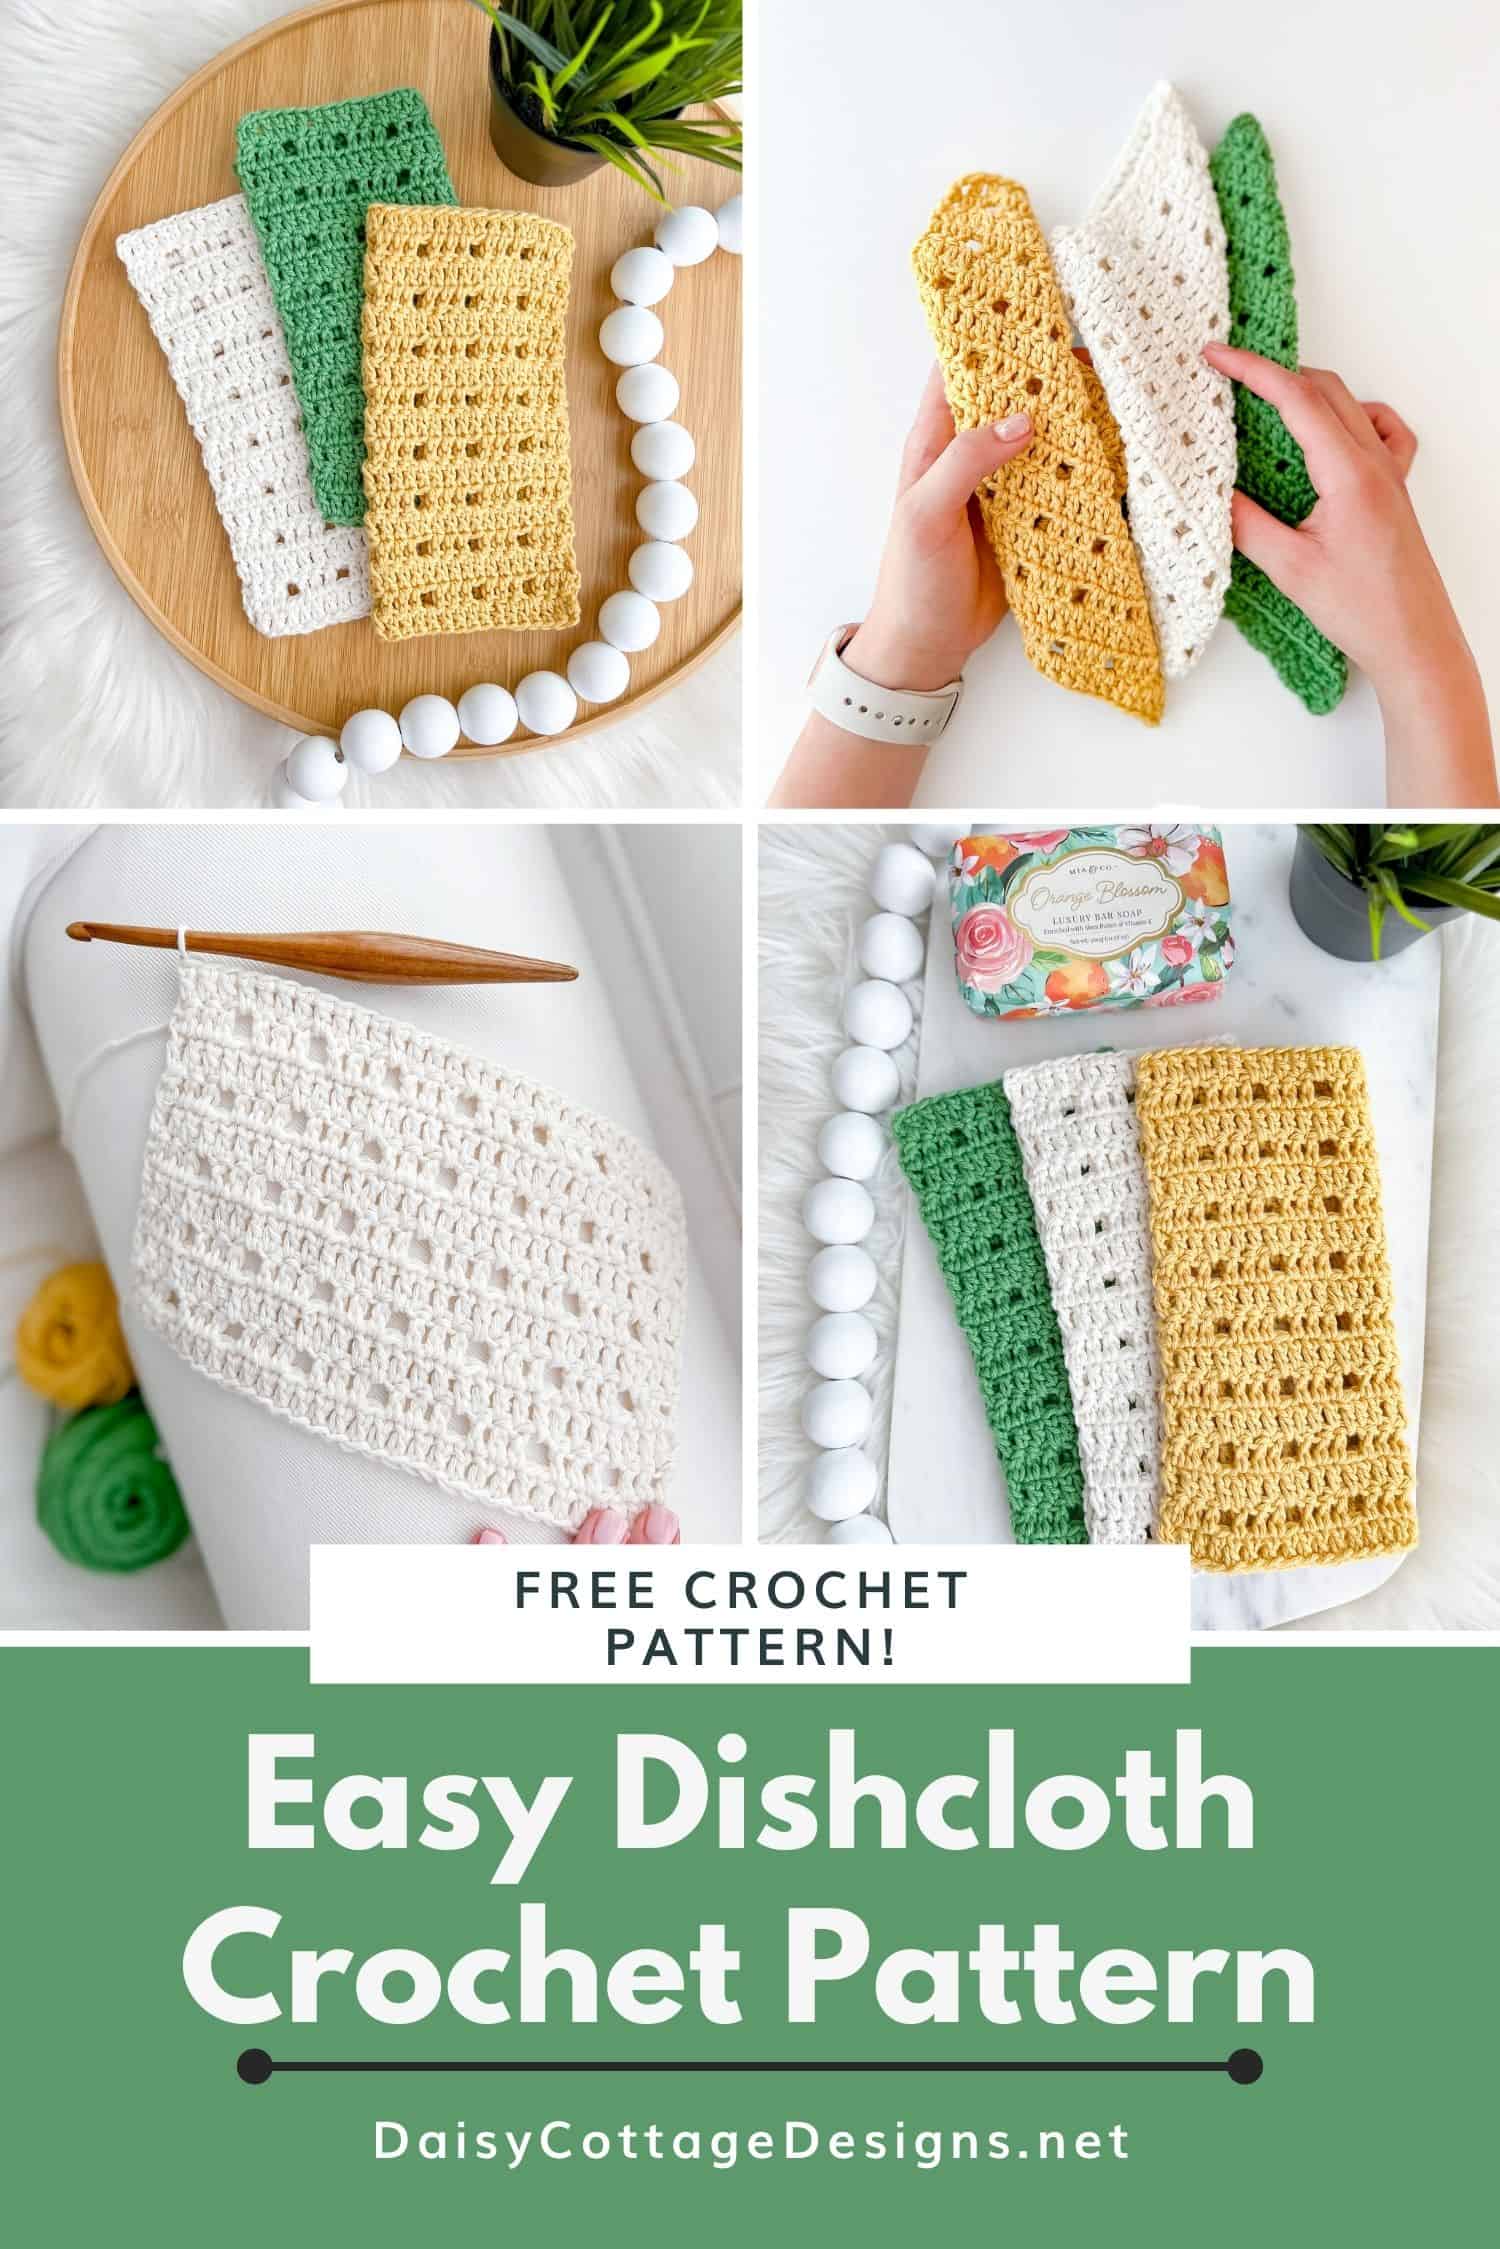 Blooming Crochet Dishcloths - Your Crochet